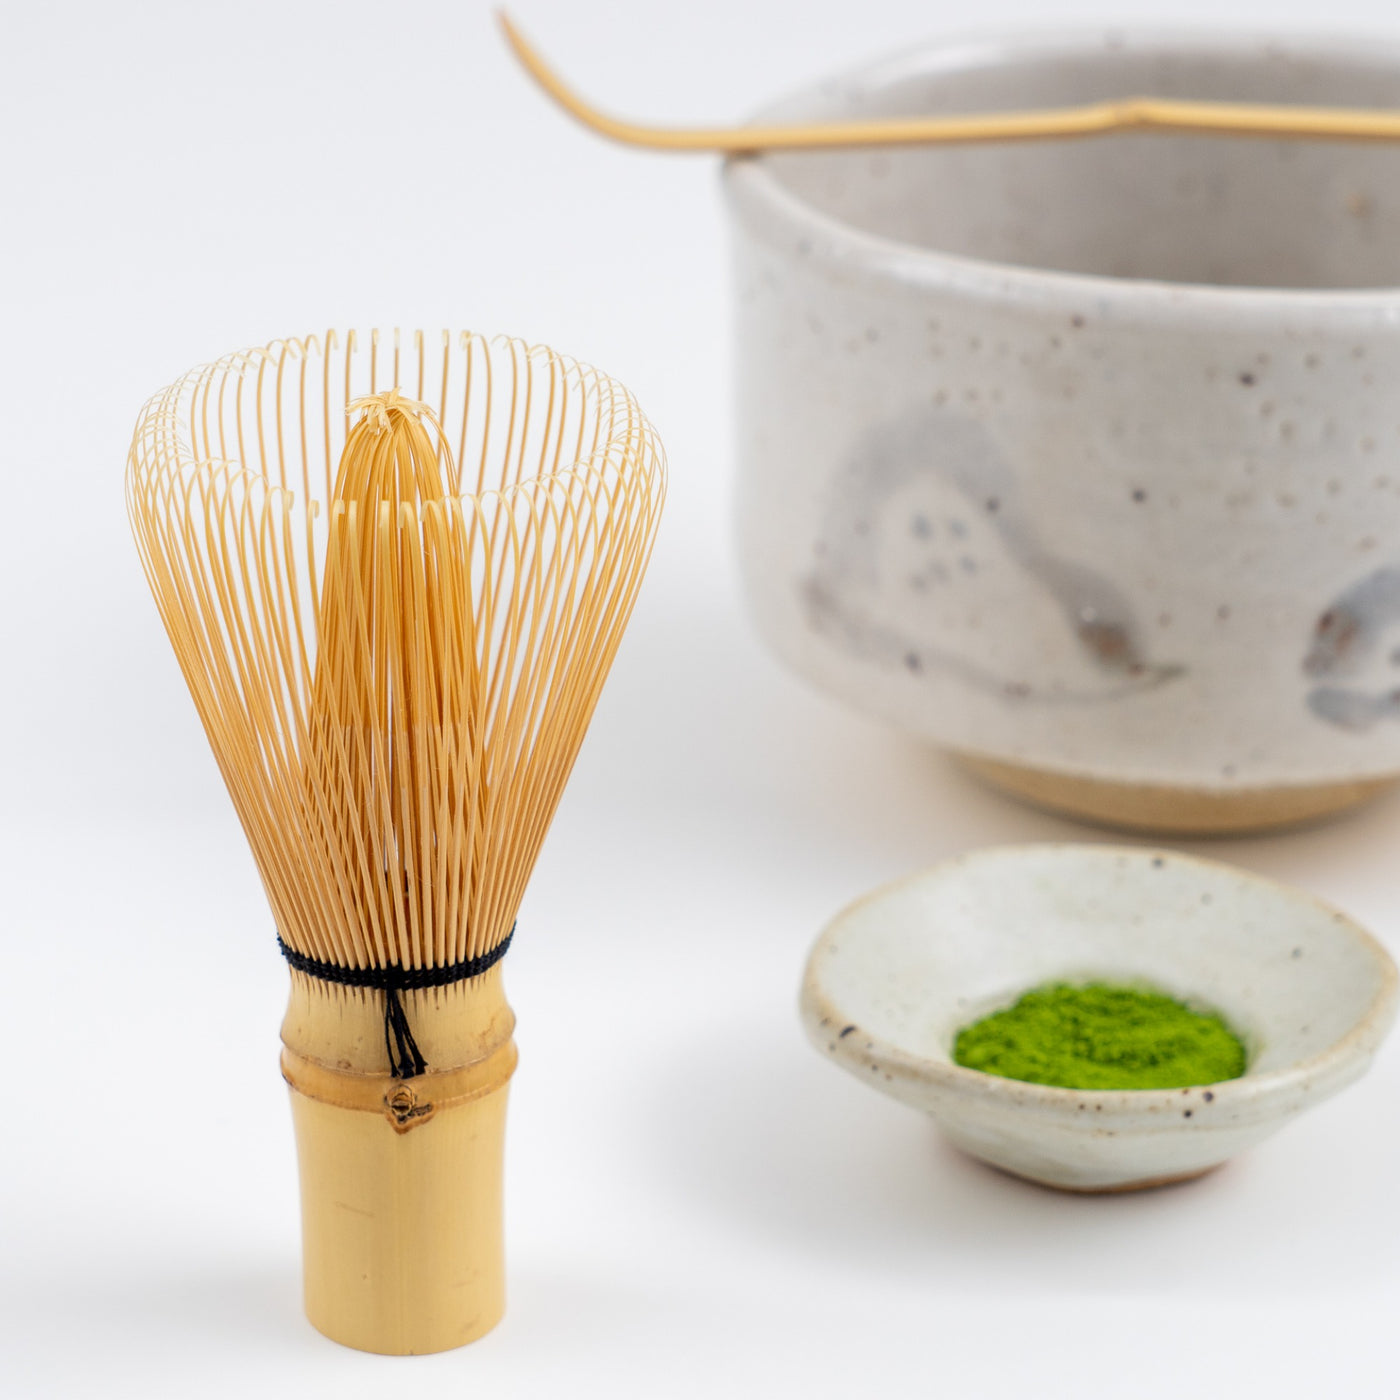 Green Tea Whisk, Japanese Matcha Whisk, Keep Whisk Shape